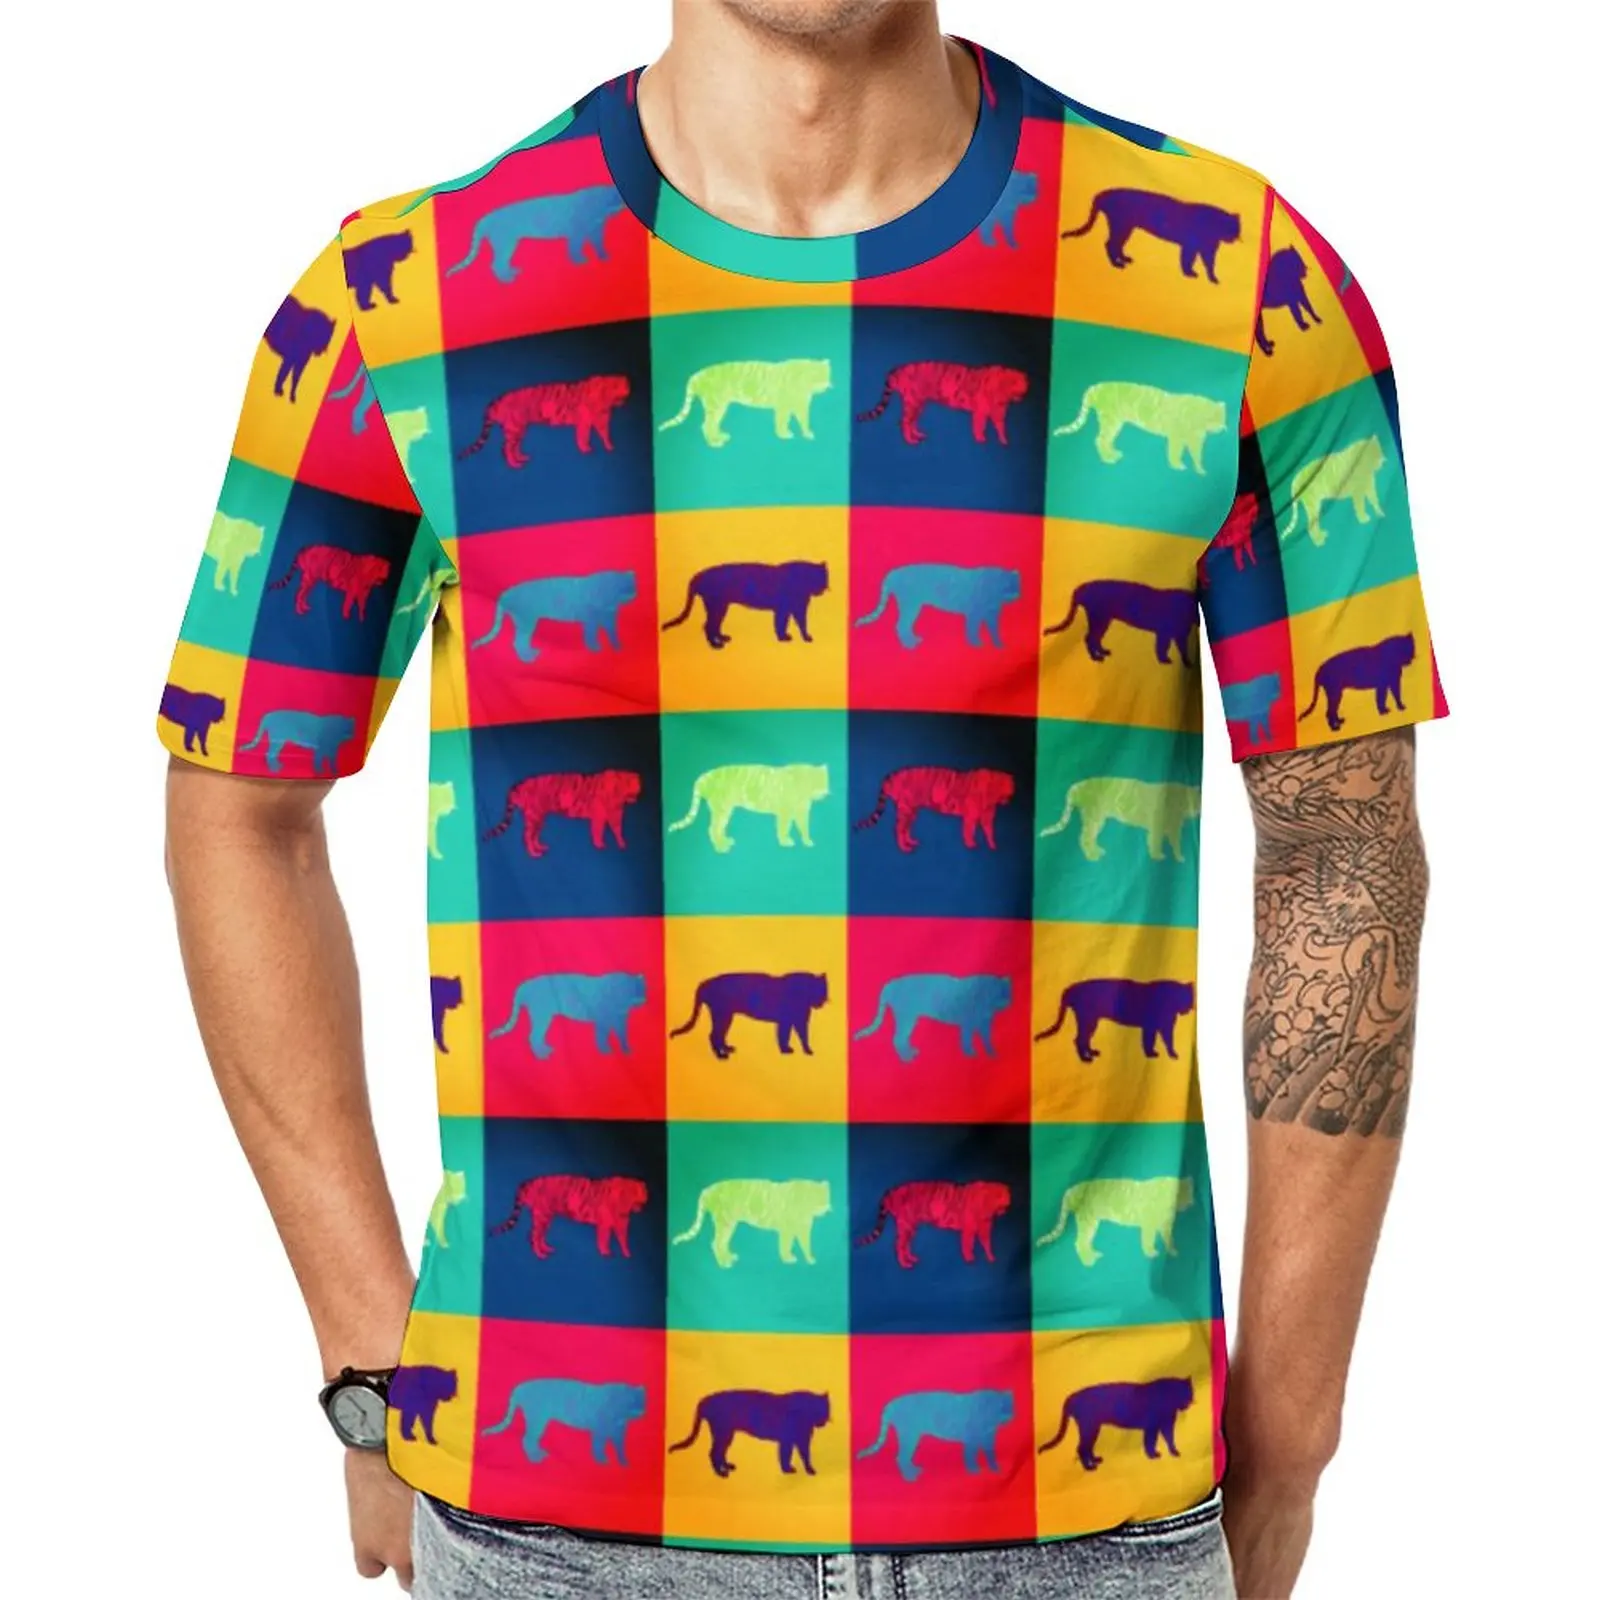 

Красочная футболка с тигром, мужские Модные футболки в стиле поп-арт, летние футболки на заказ, повседневная женская одежда с коротким рукавом, идея для подарка